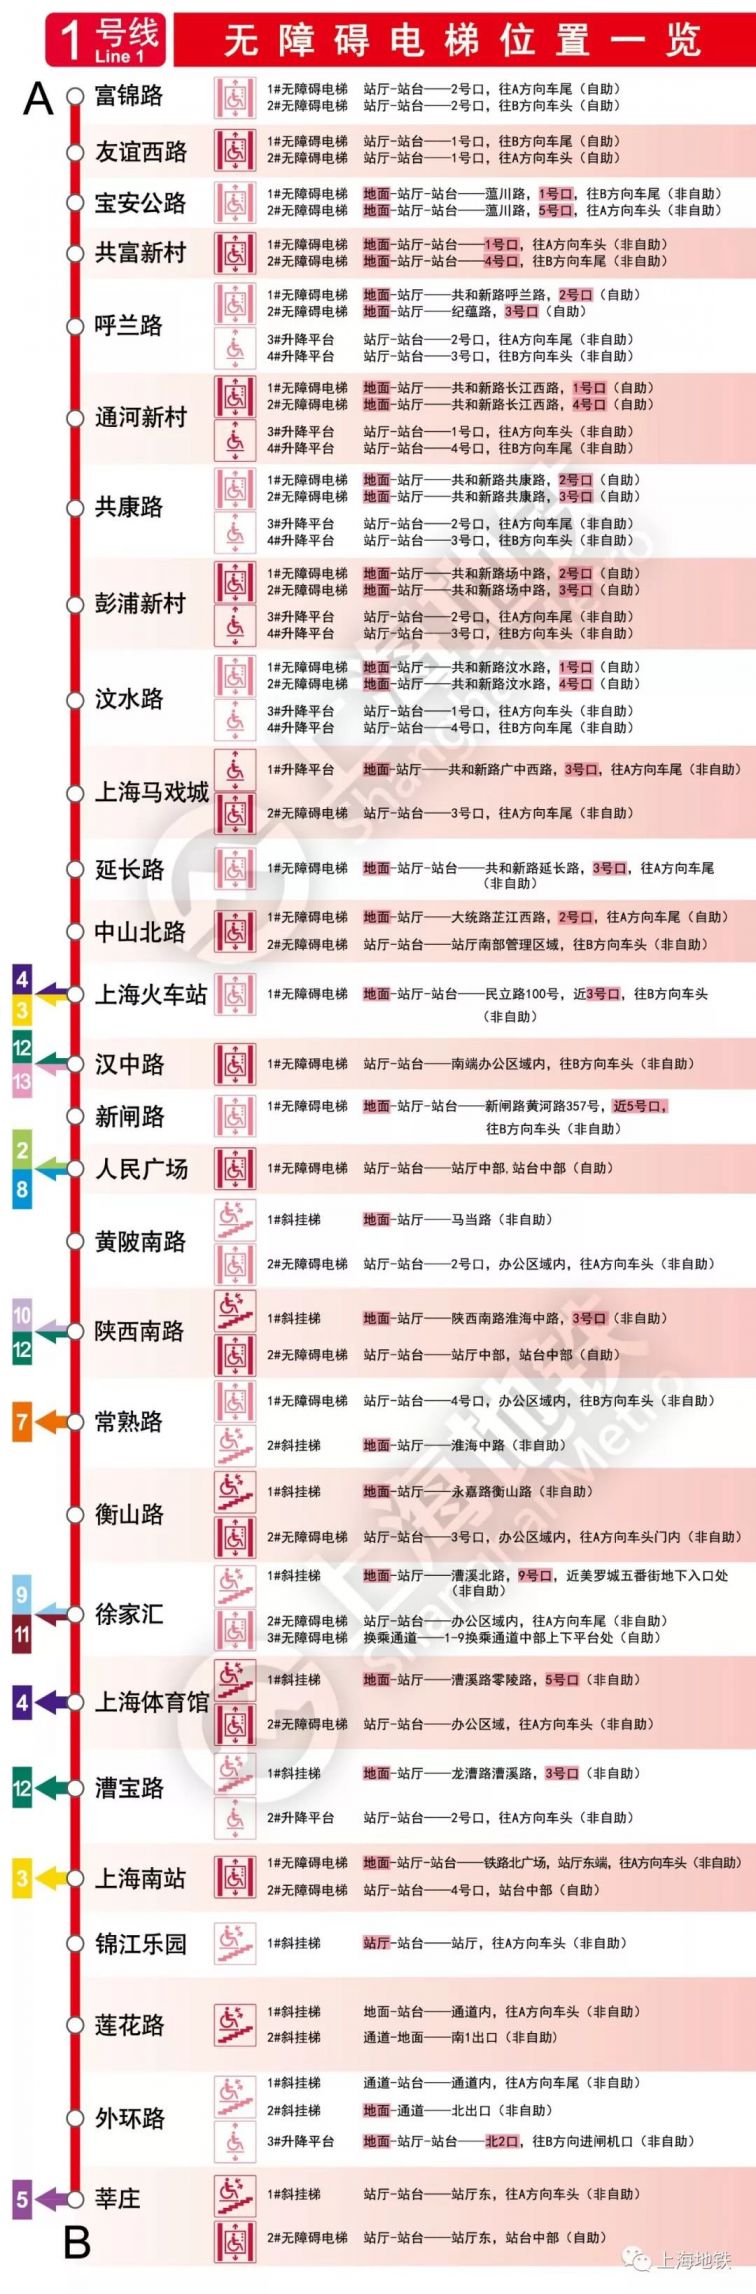 上海地铁1号线 路线图图片